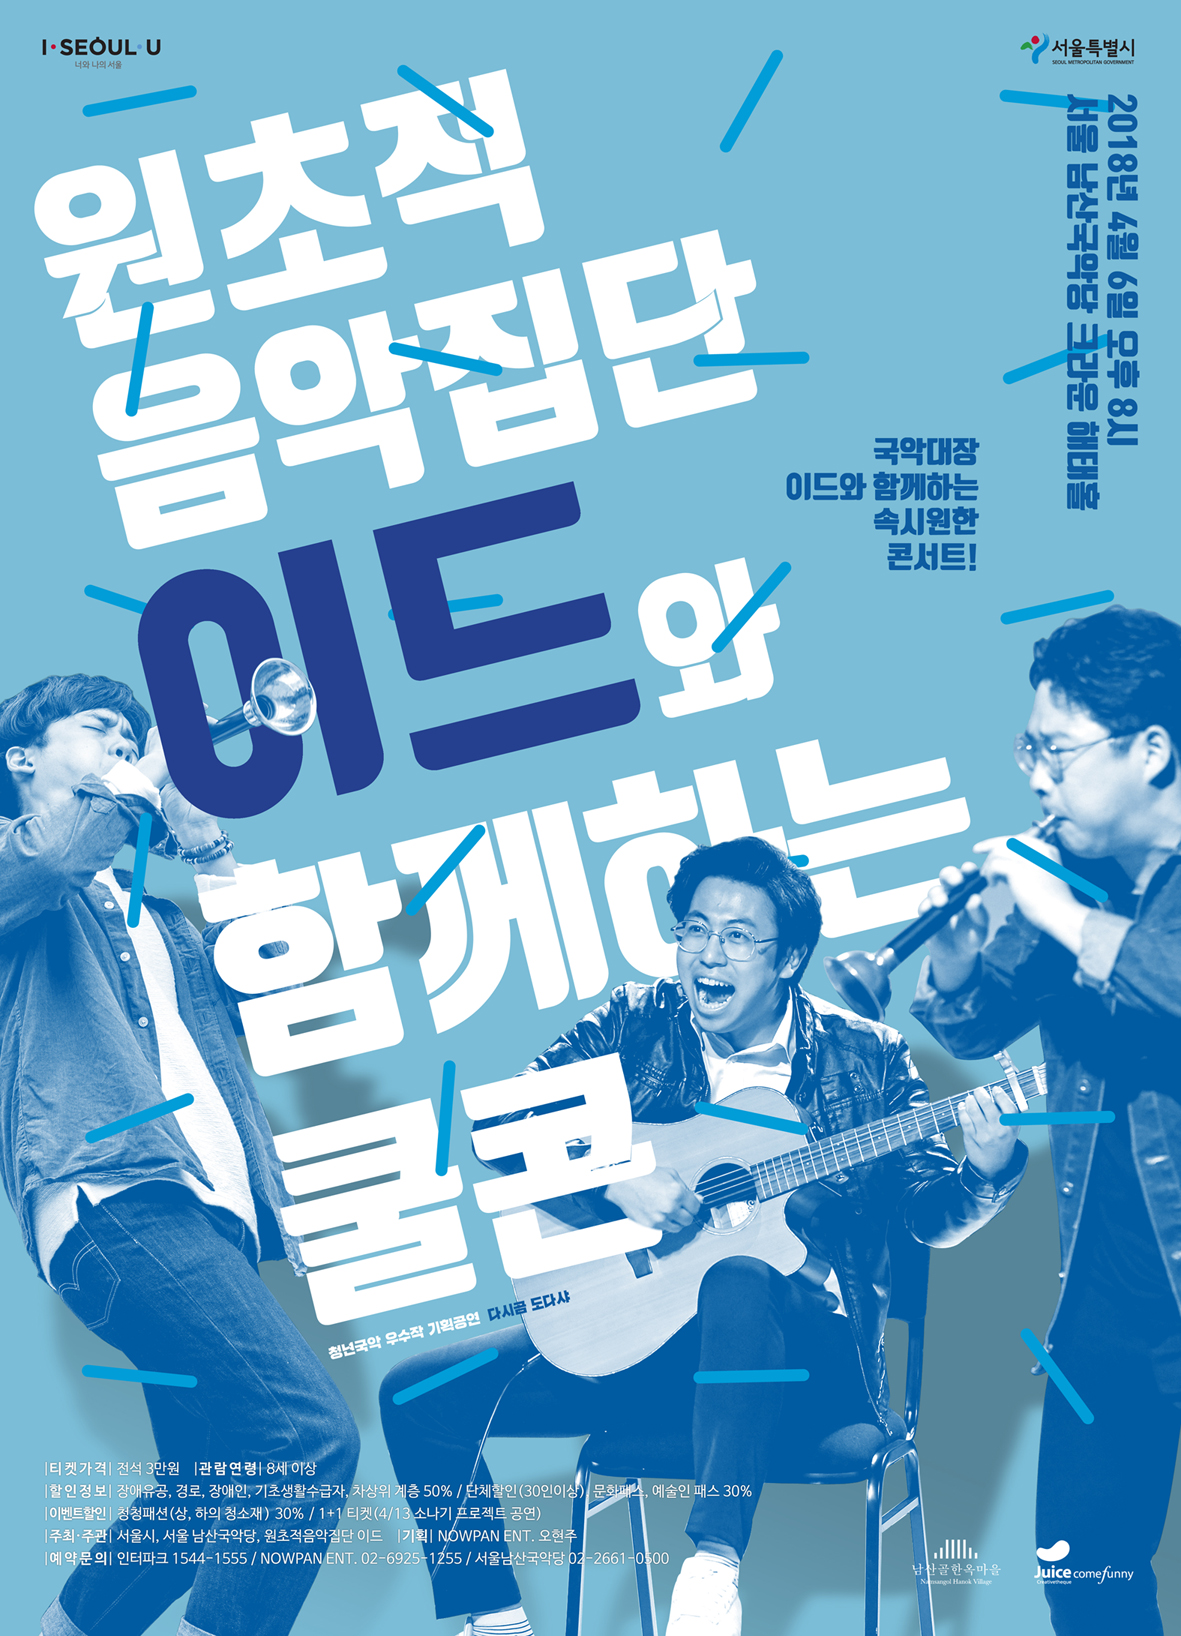 국악대장!  원초적음악집단 이드와 함께하는 쿨콘(Cool Concert)!! 이미지